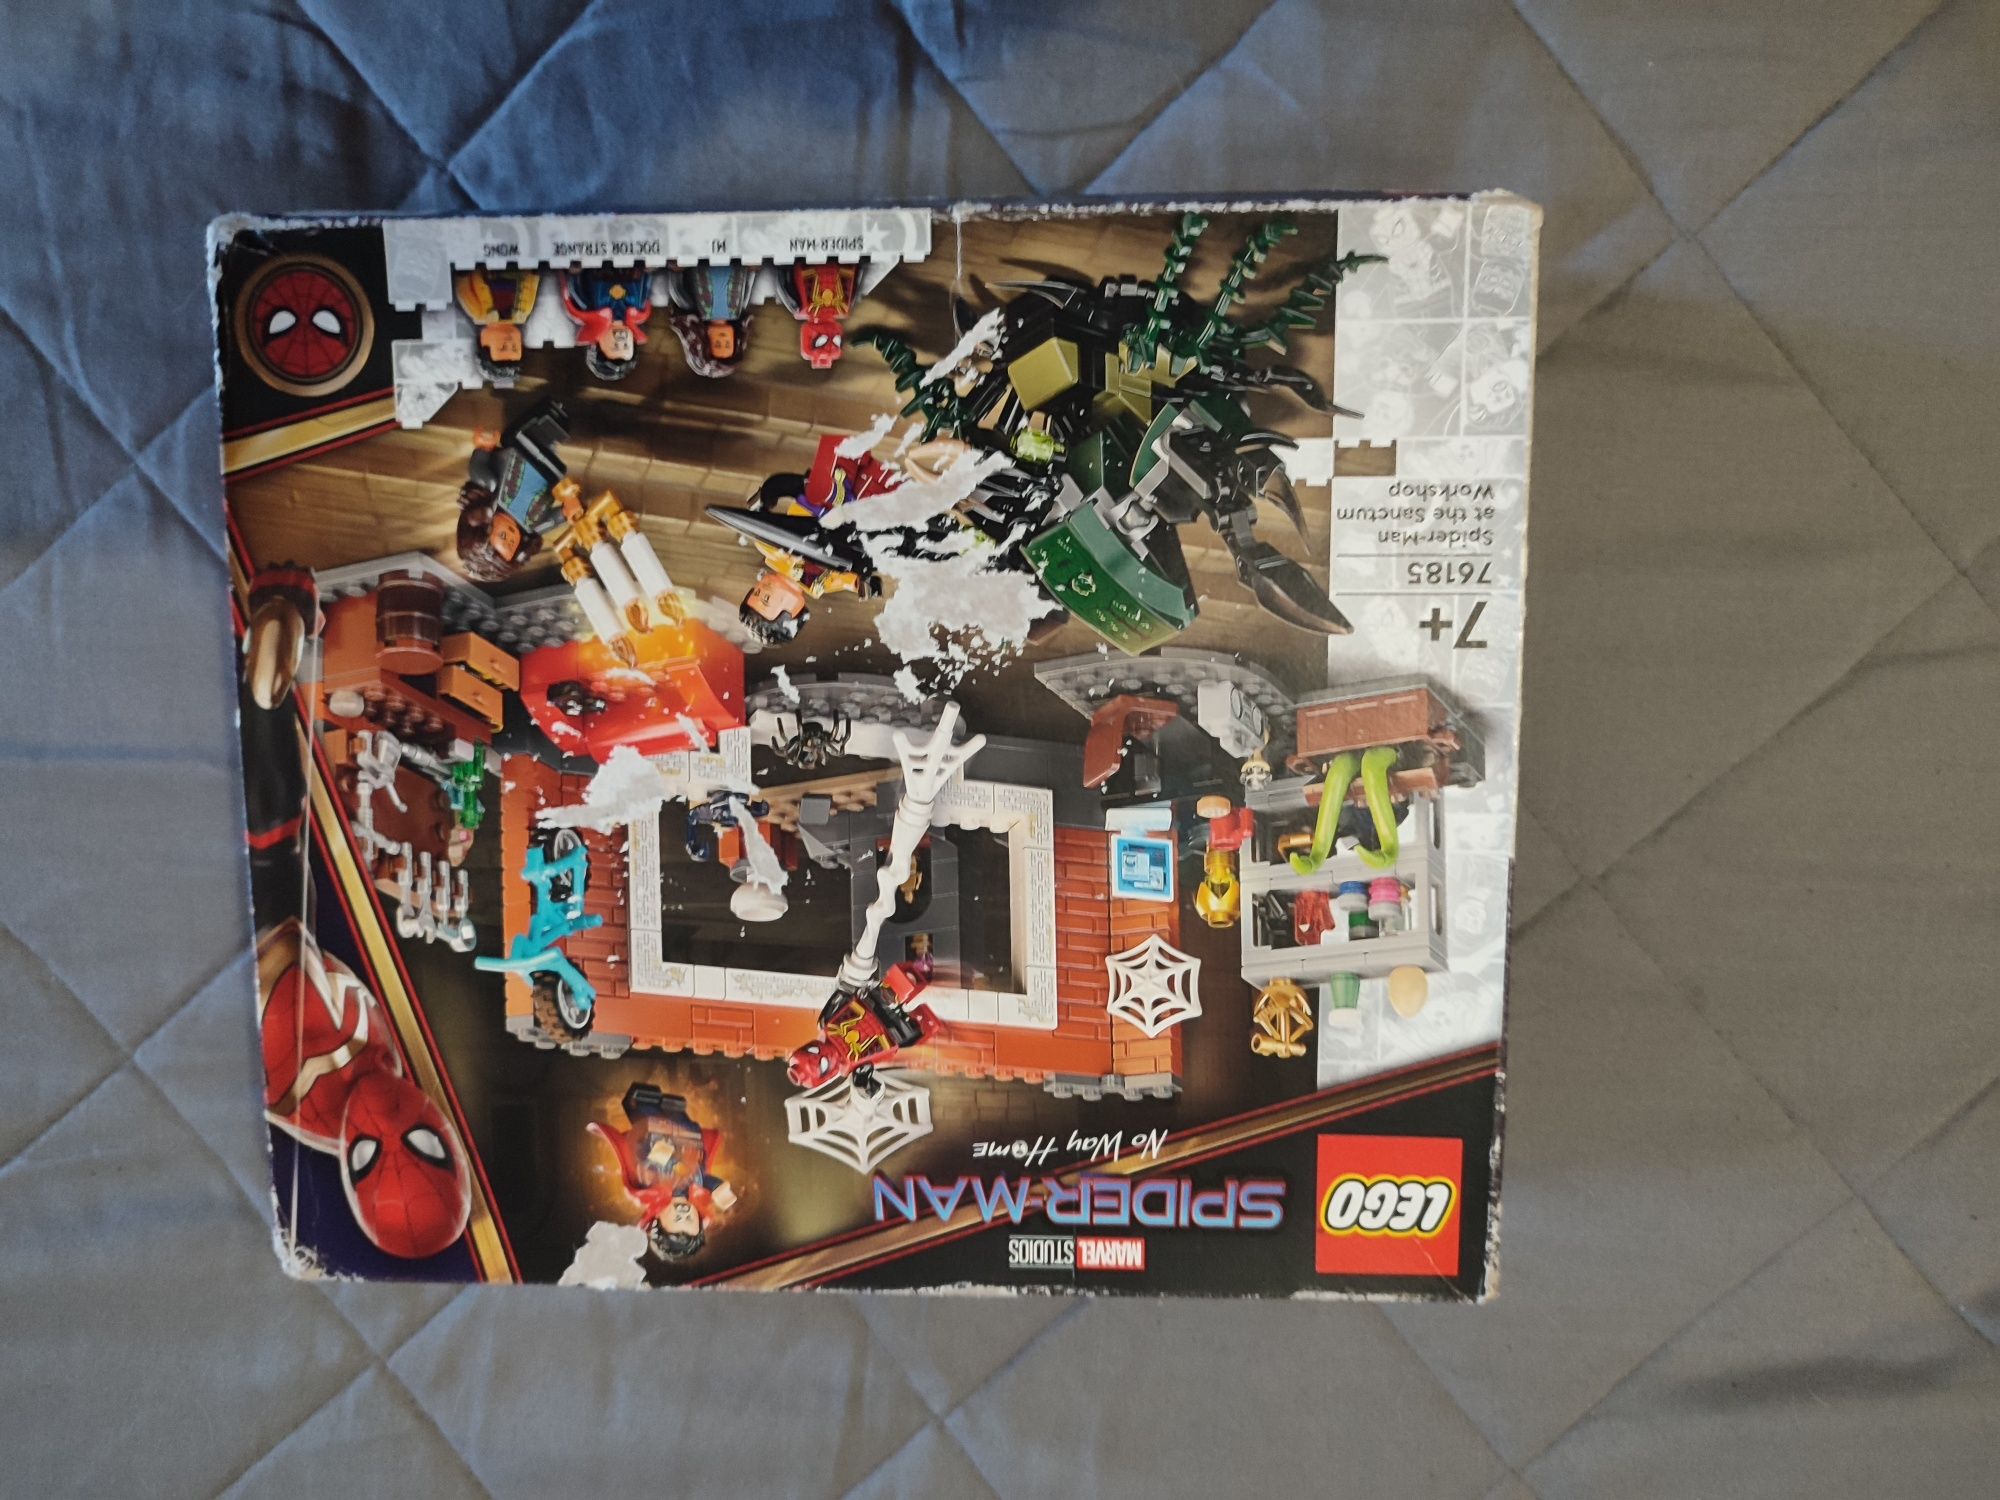 Lego 76185 Spiderman No Way Home